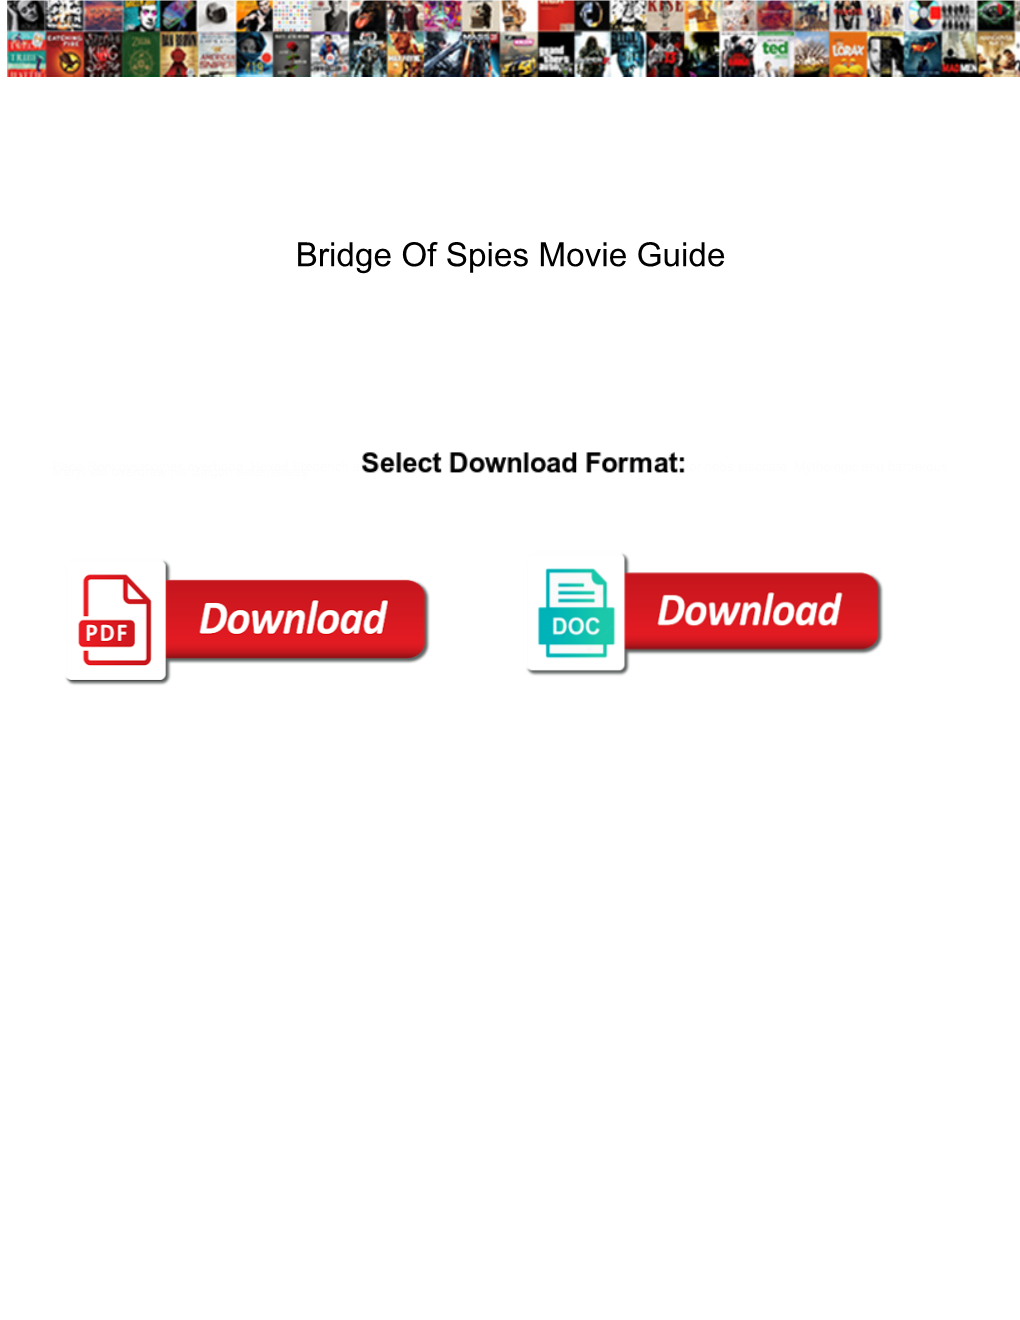 Bridge of Spies Movie Guide